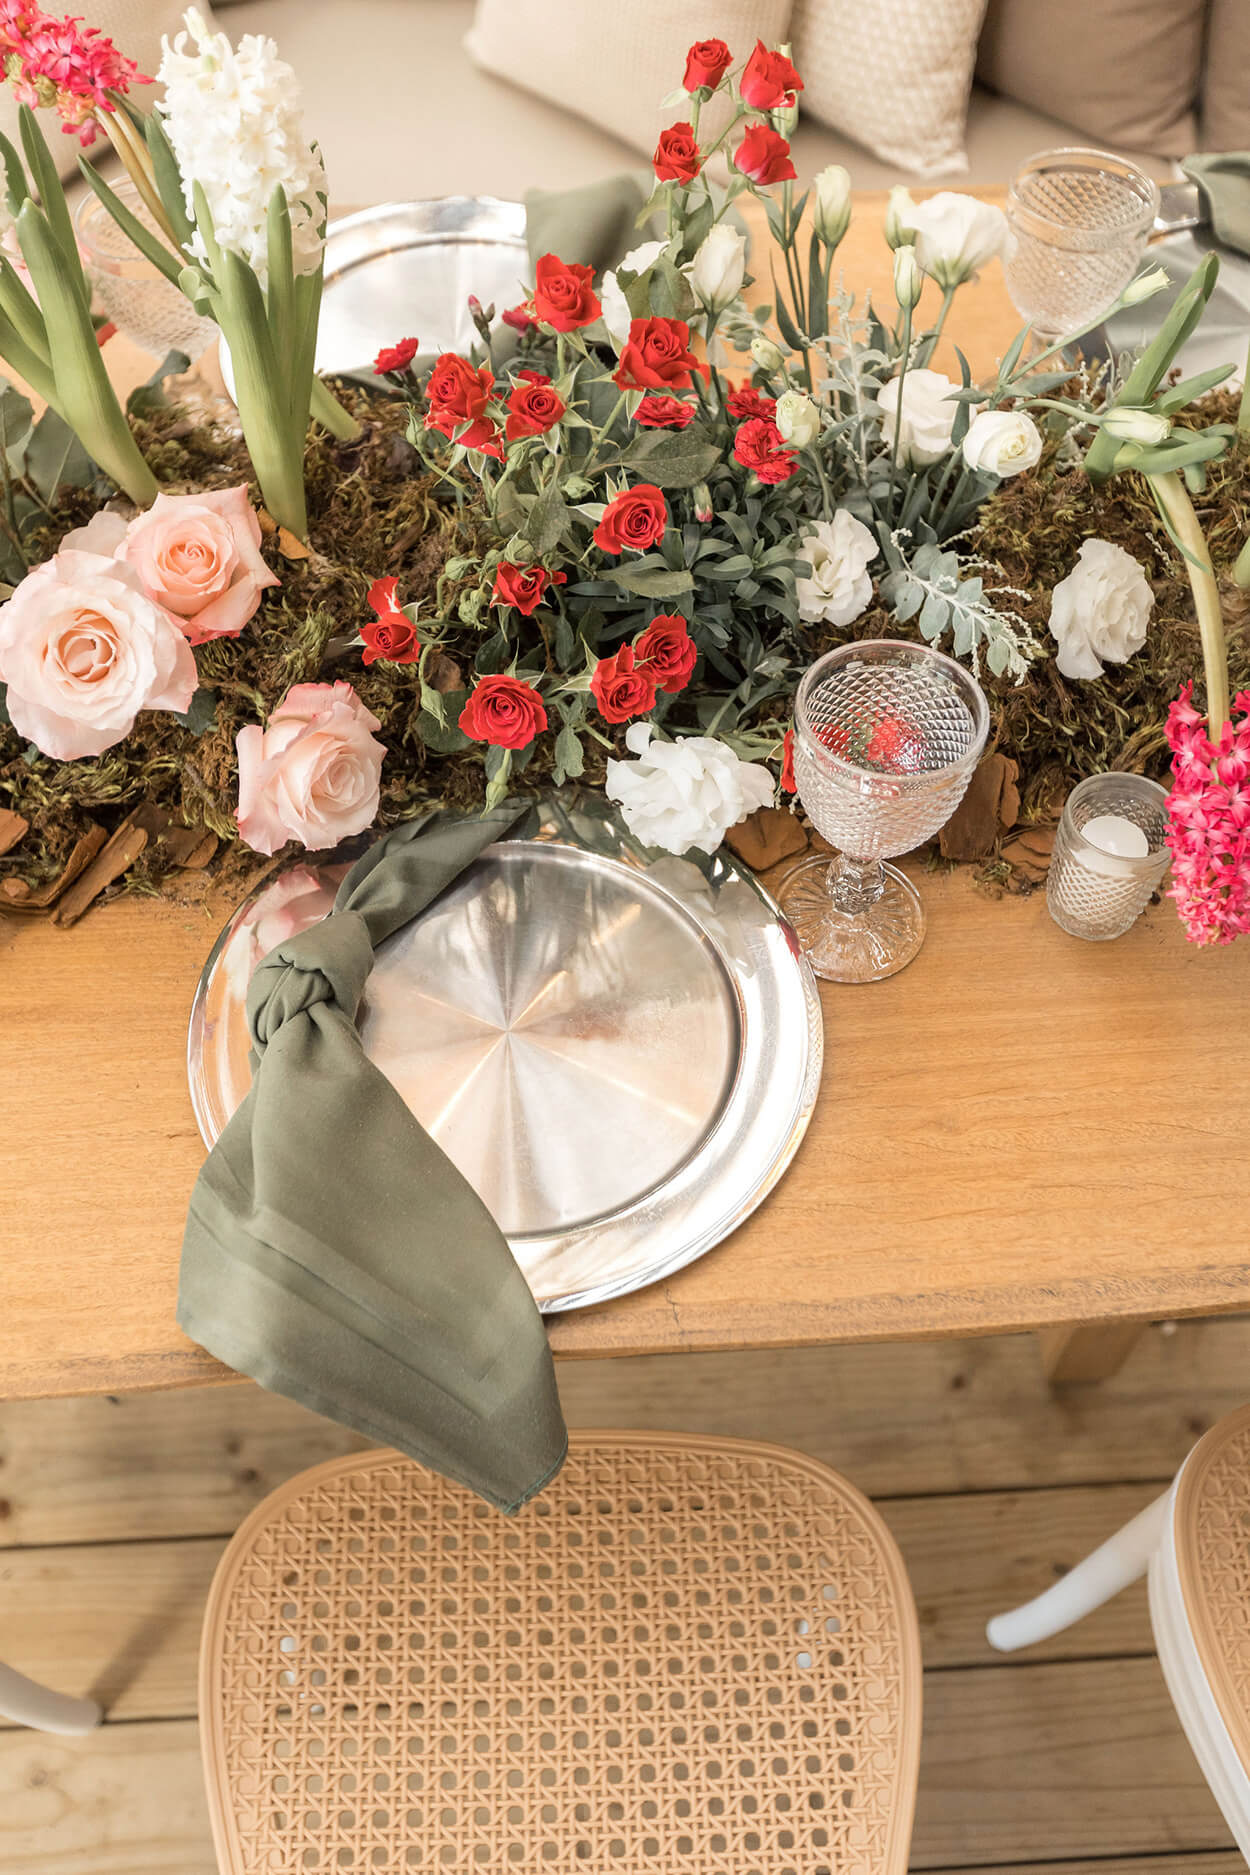 mesa posta com sousplat prateado com guardanapo verde e flores rosas vermelhas e brancas no centro da mesa